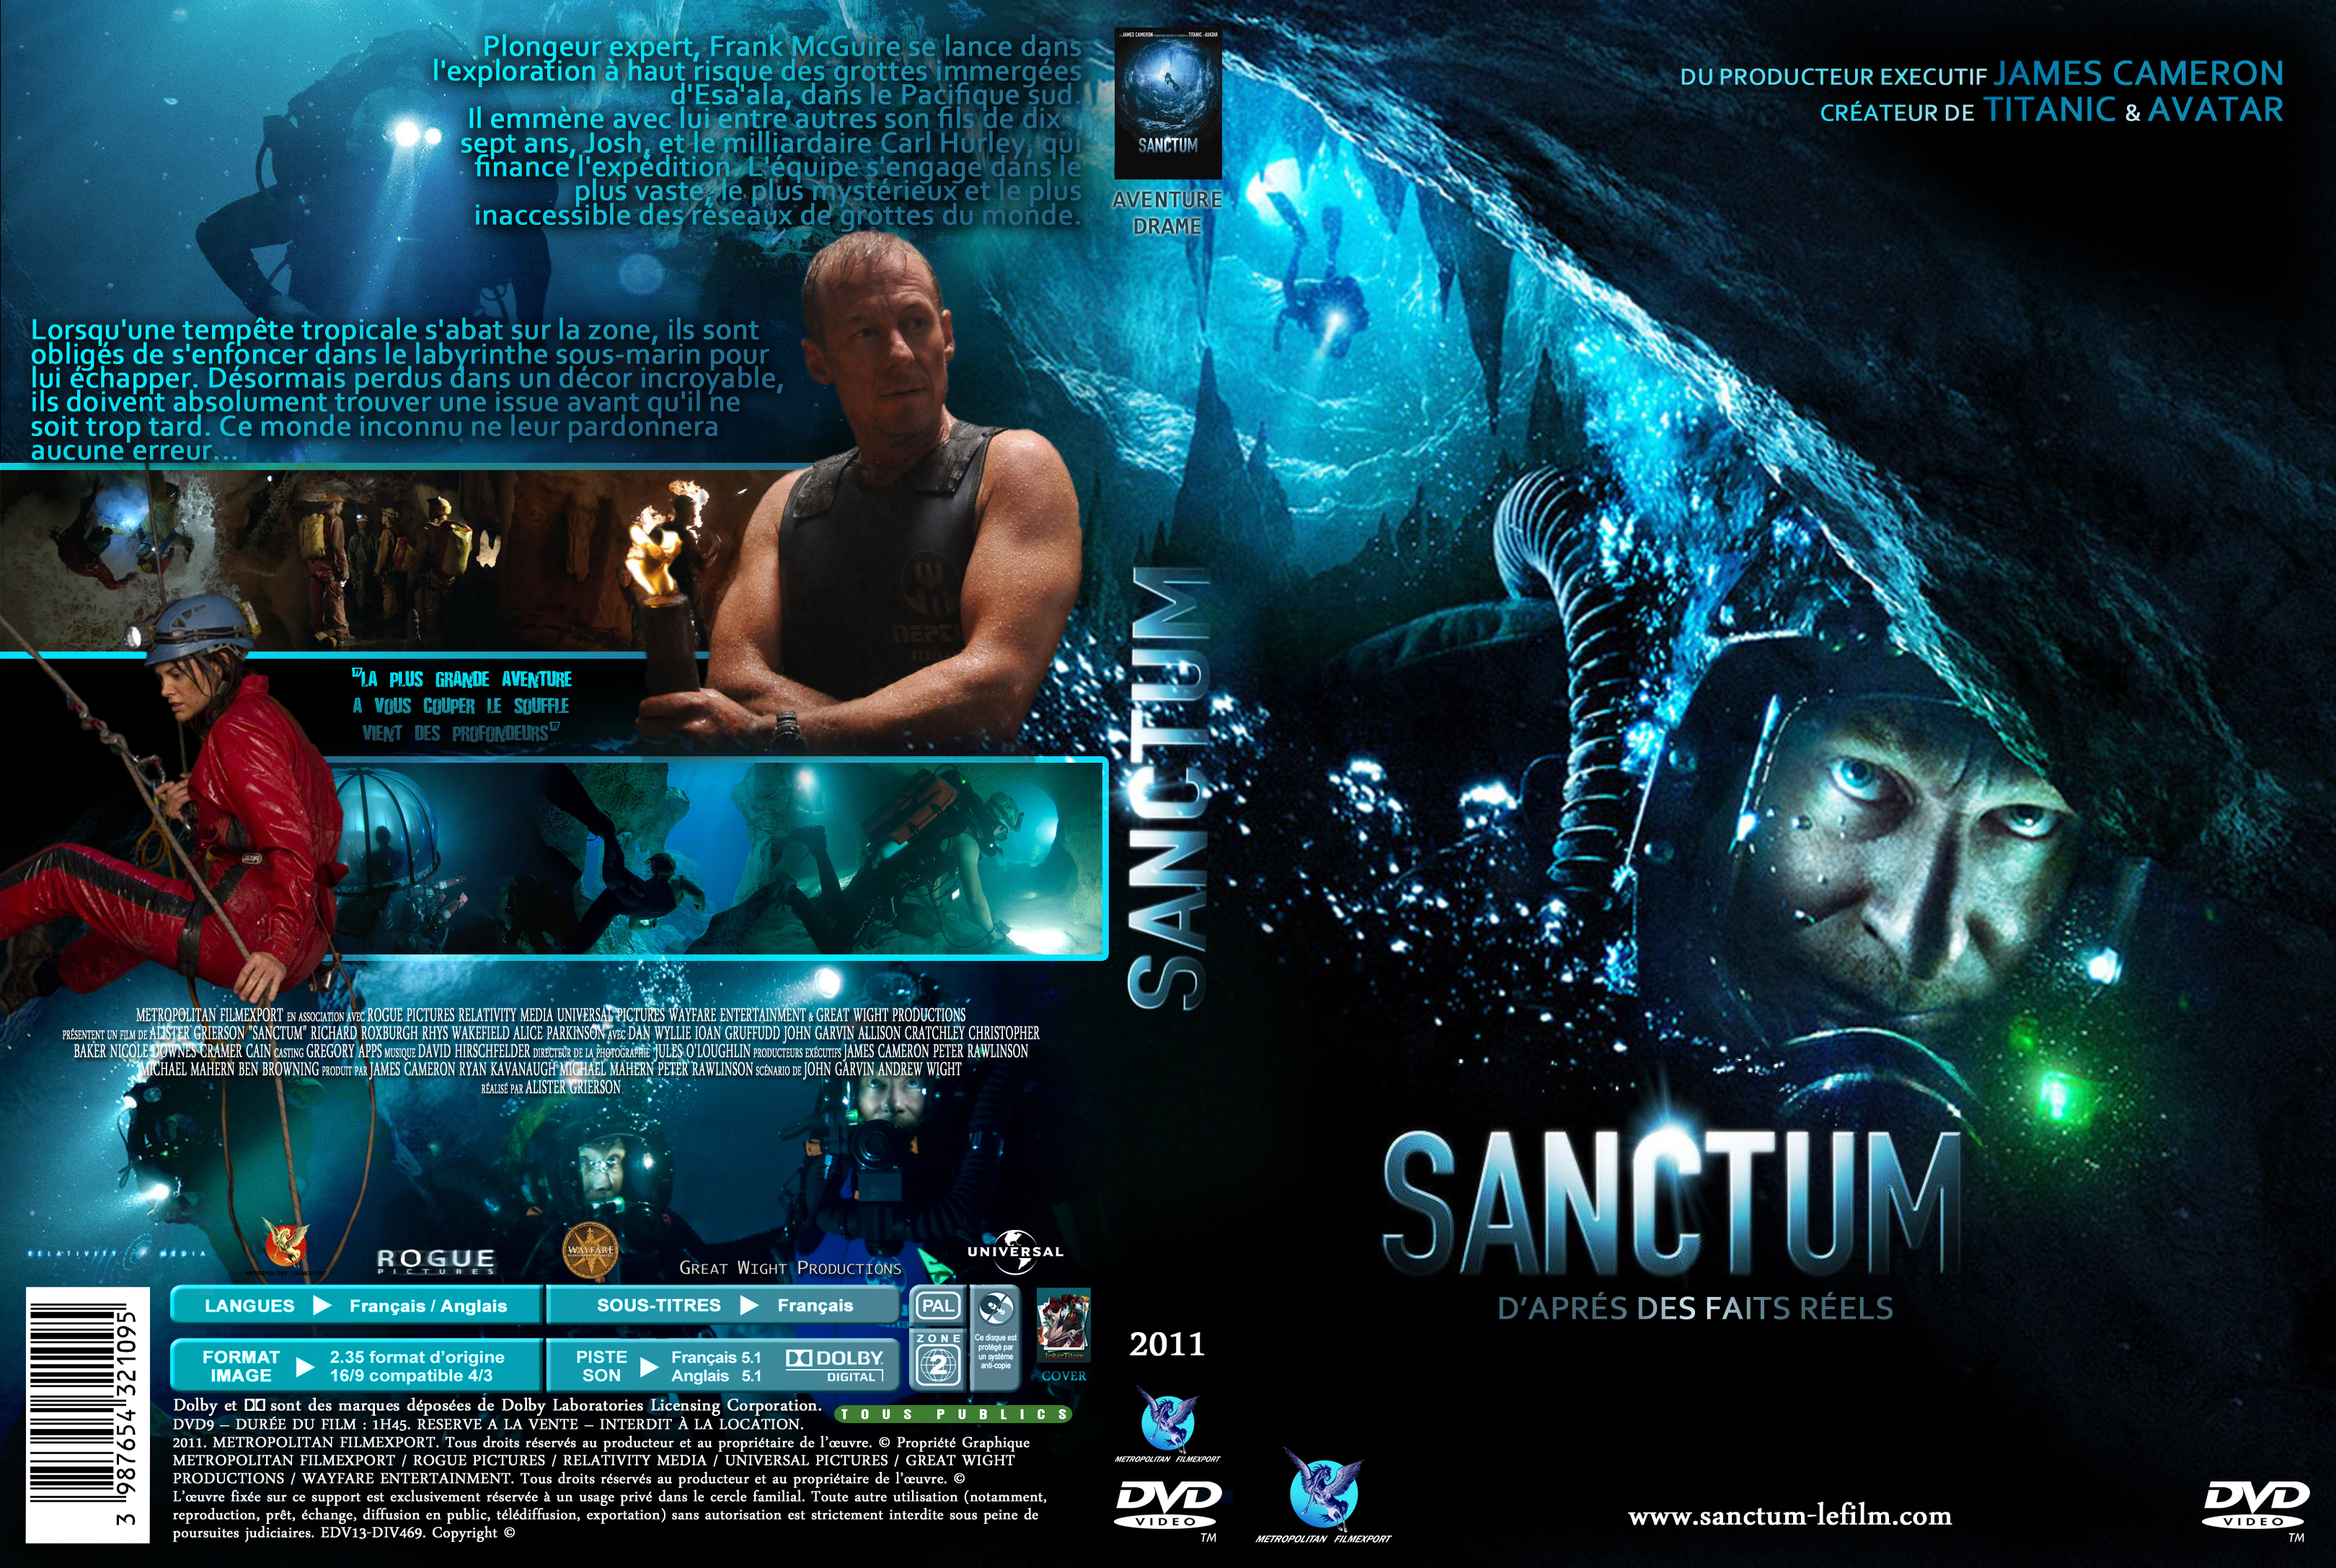 Jaquette DVD Sanctum custom